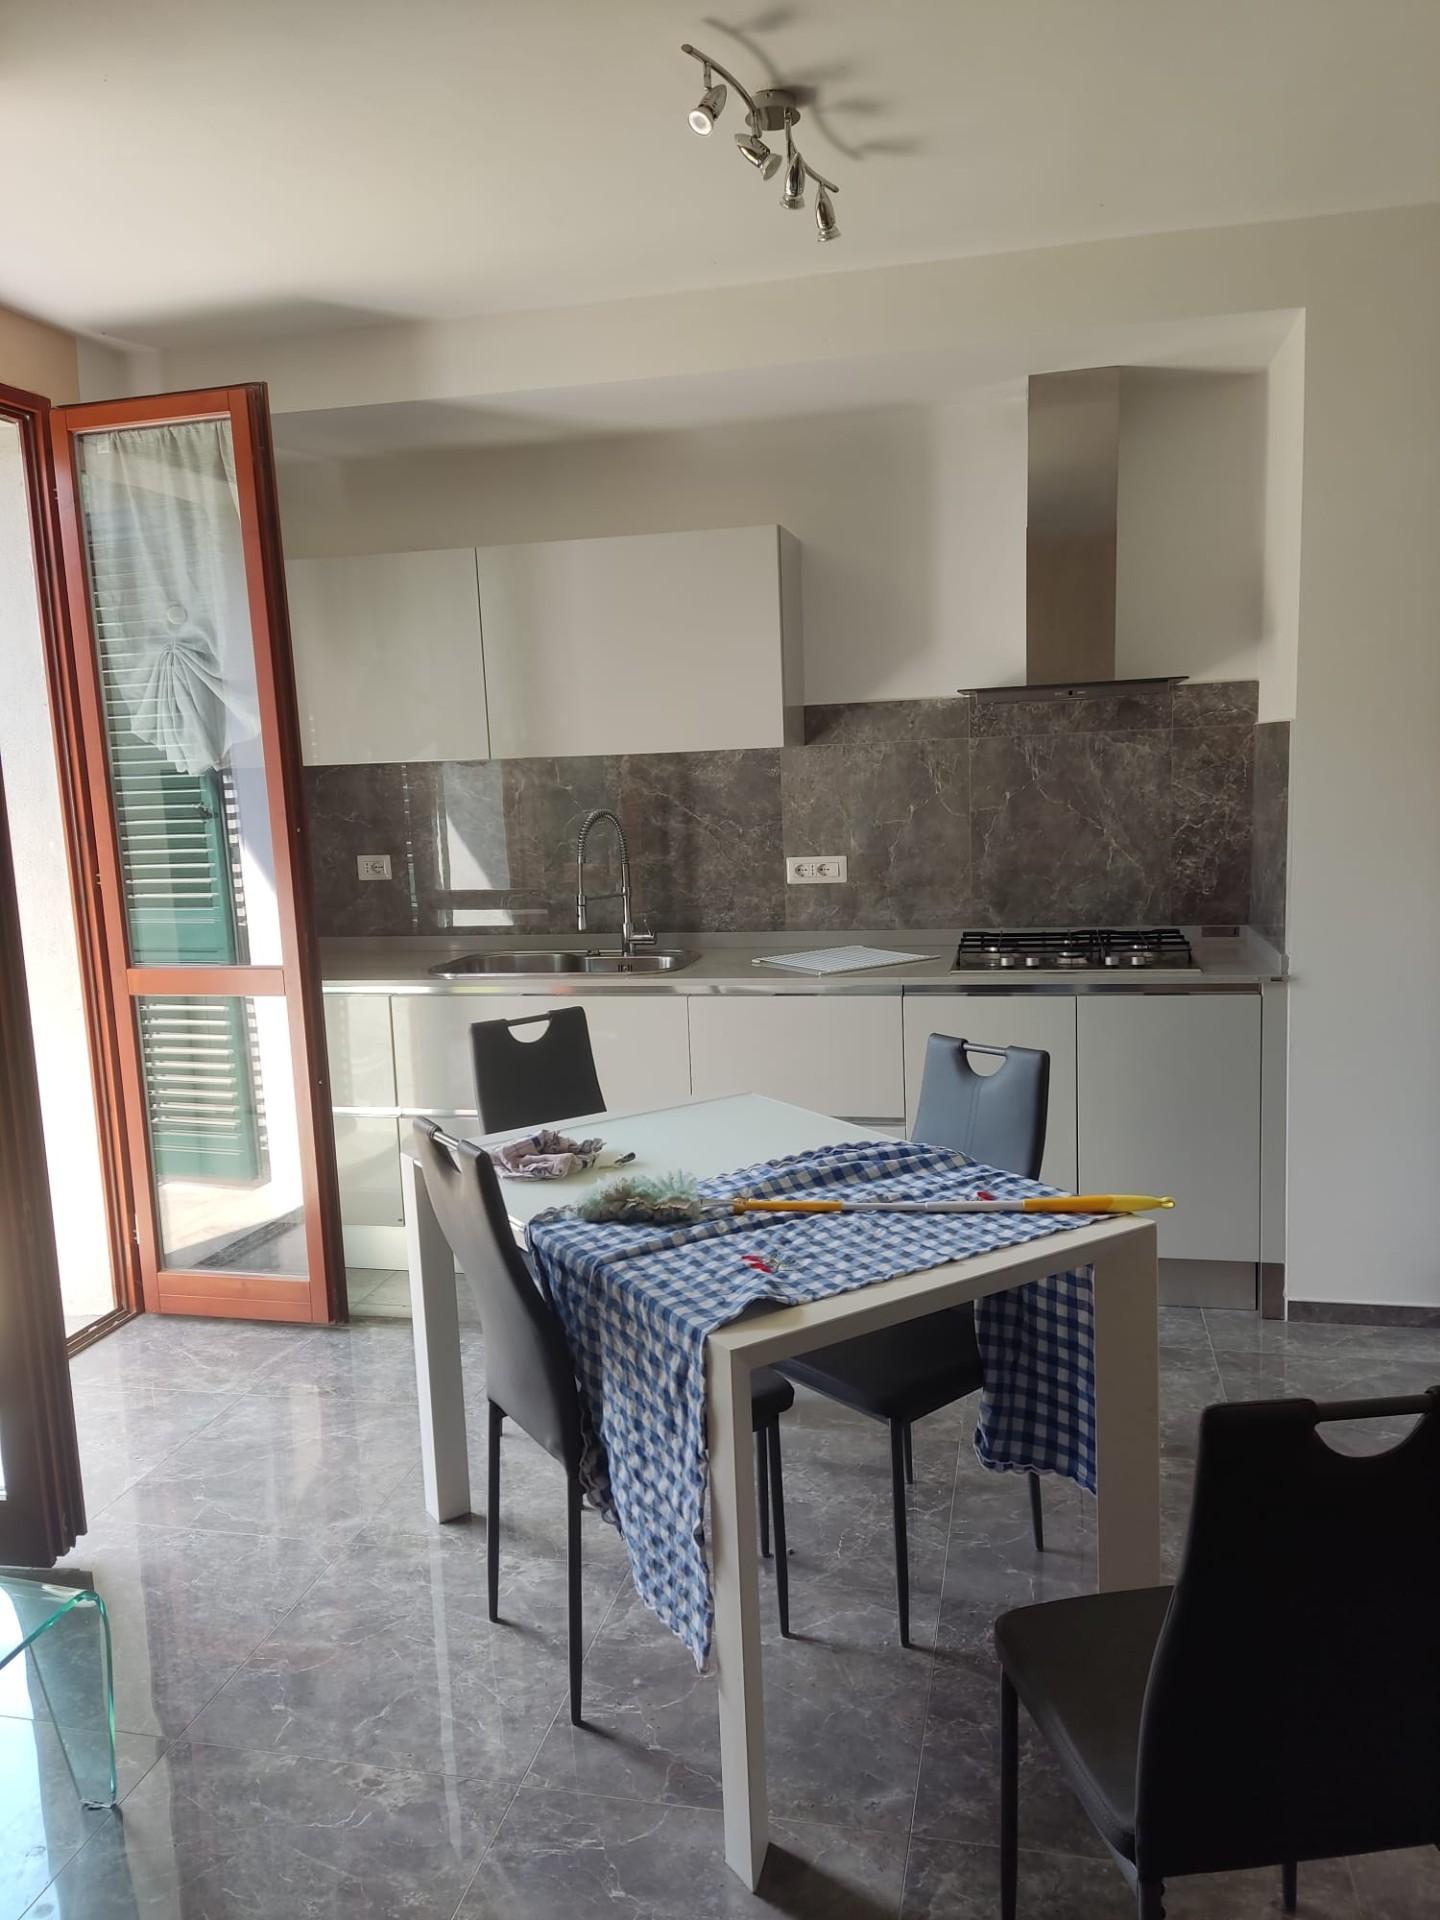 Appartamento in vendita a Barga, 3 locali, prezzo € 115.000 | CambioCasa.it